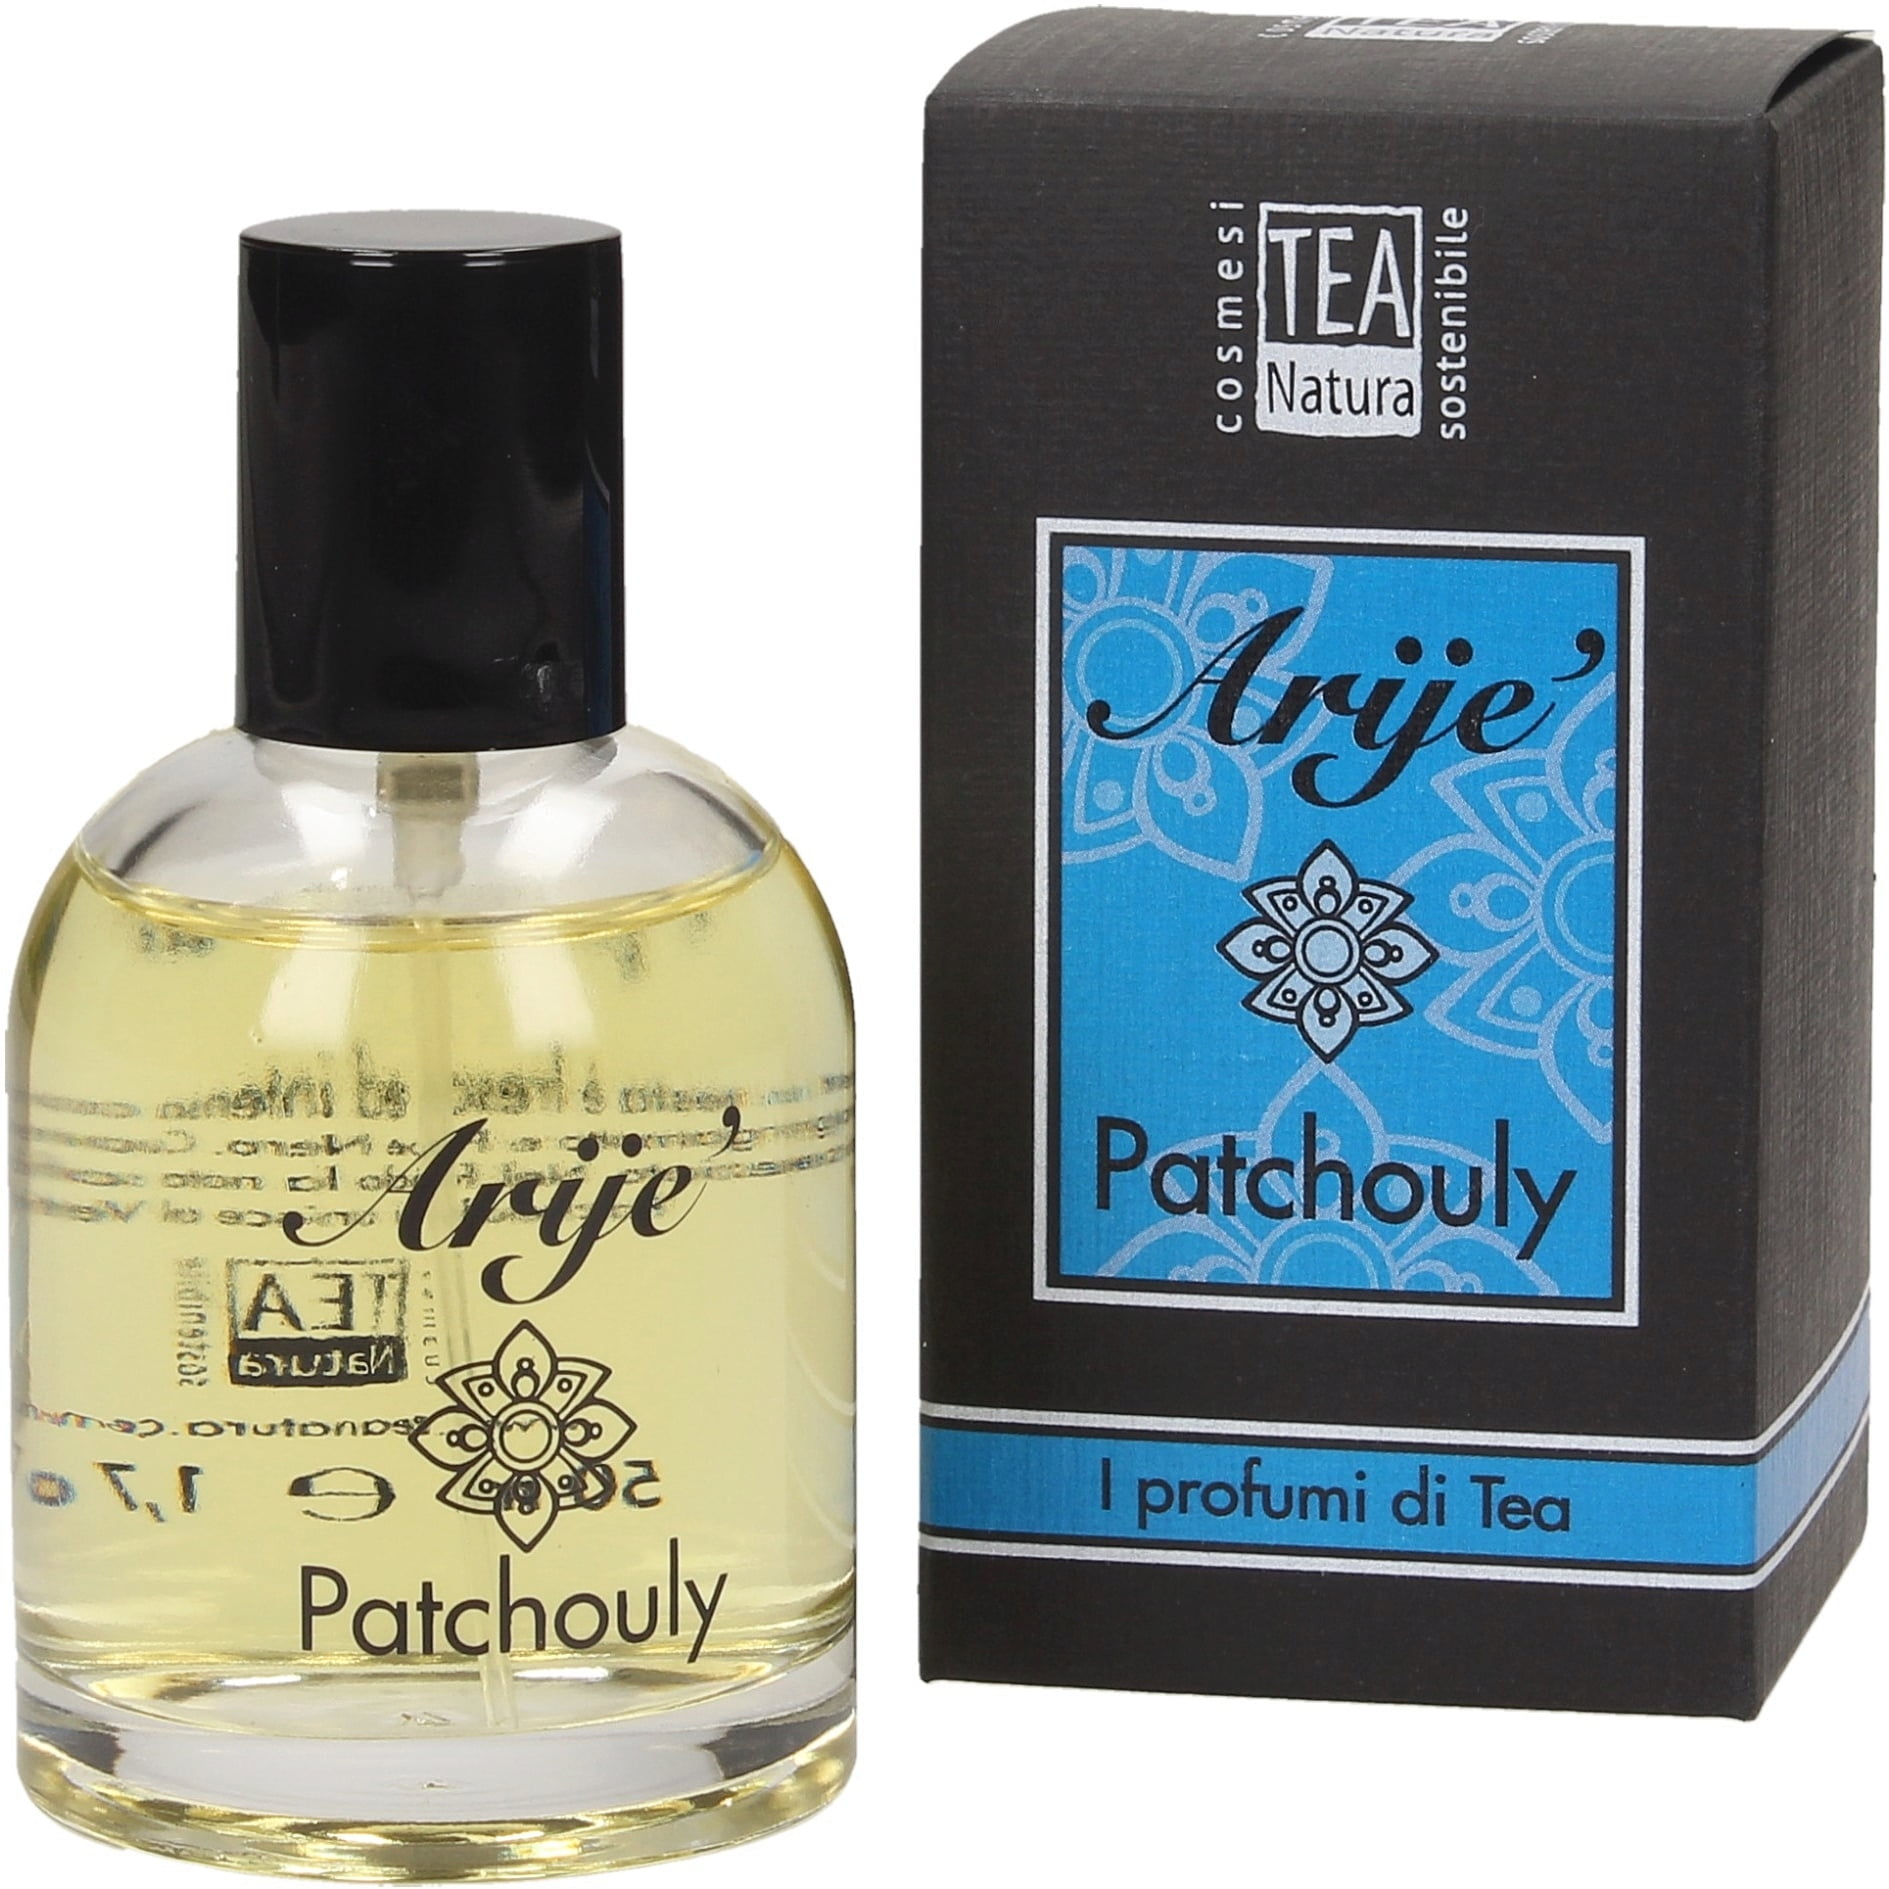 TEA Natura Arije' Patchouli Perfume, 50 ml - Ecco Verde Online Shop